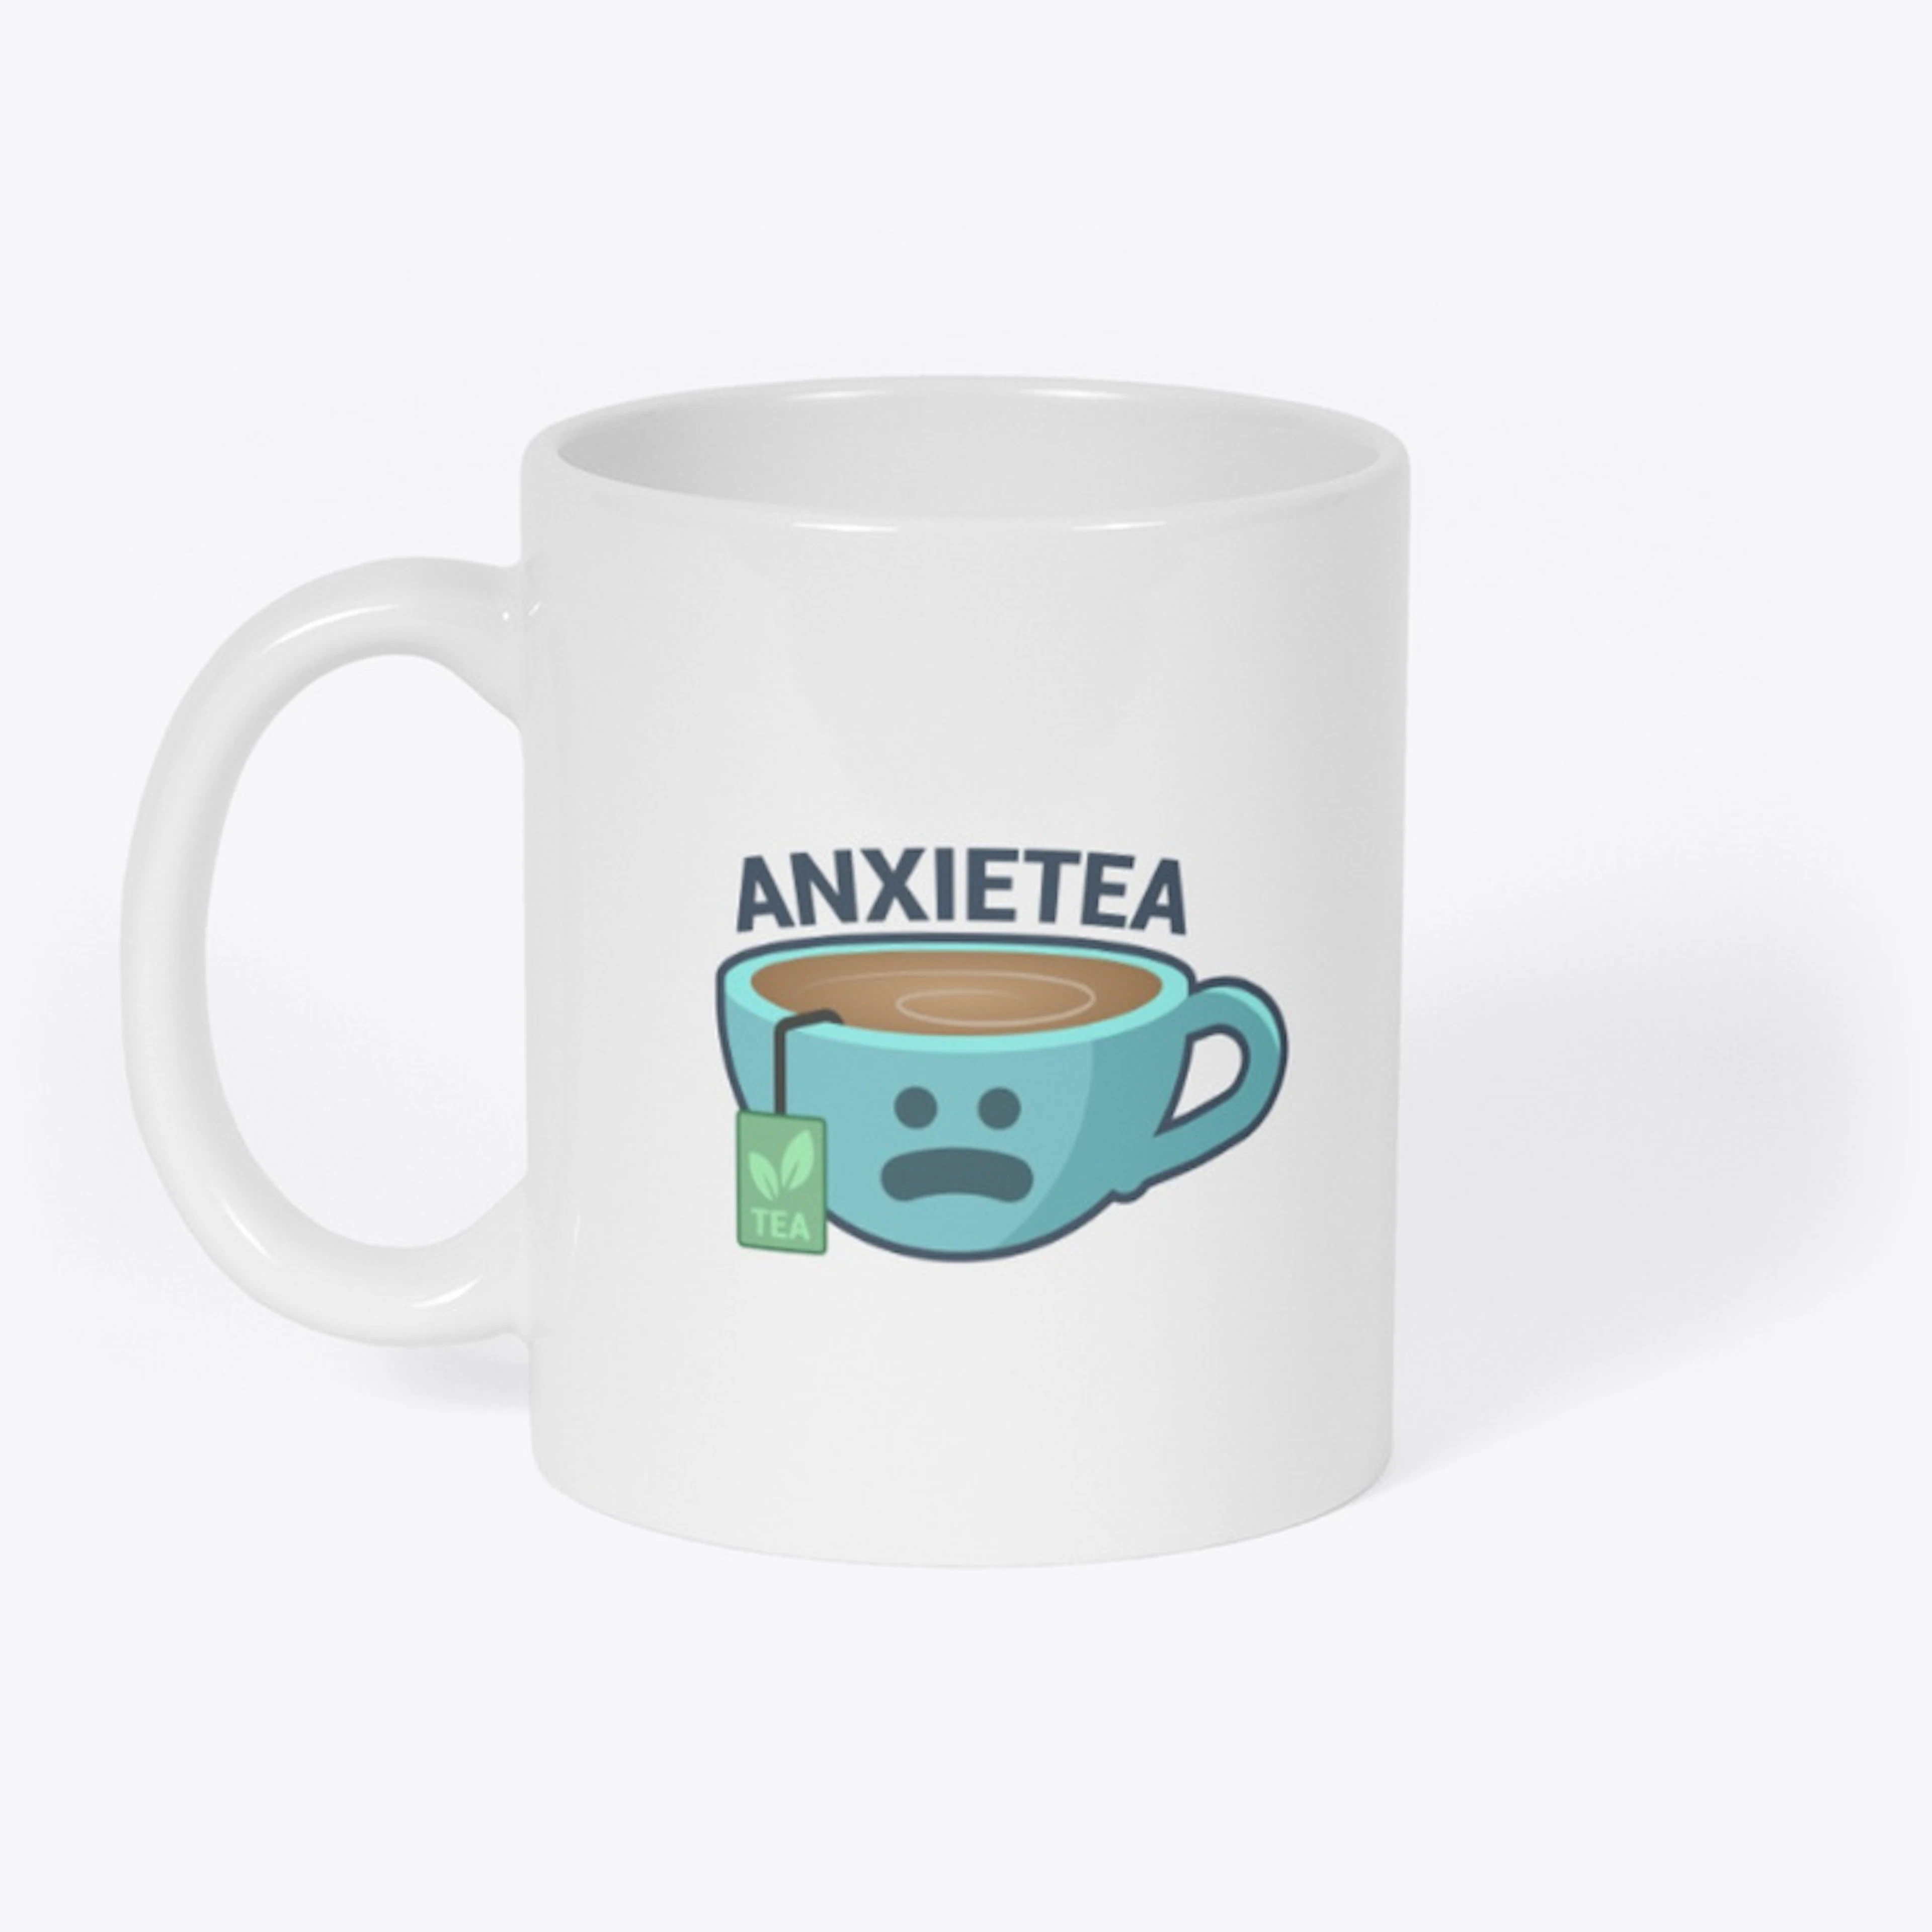 Anxietea